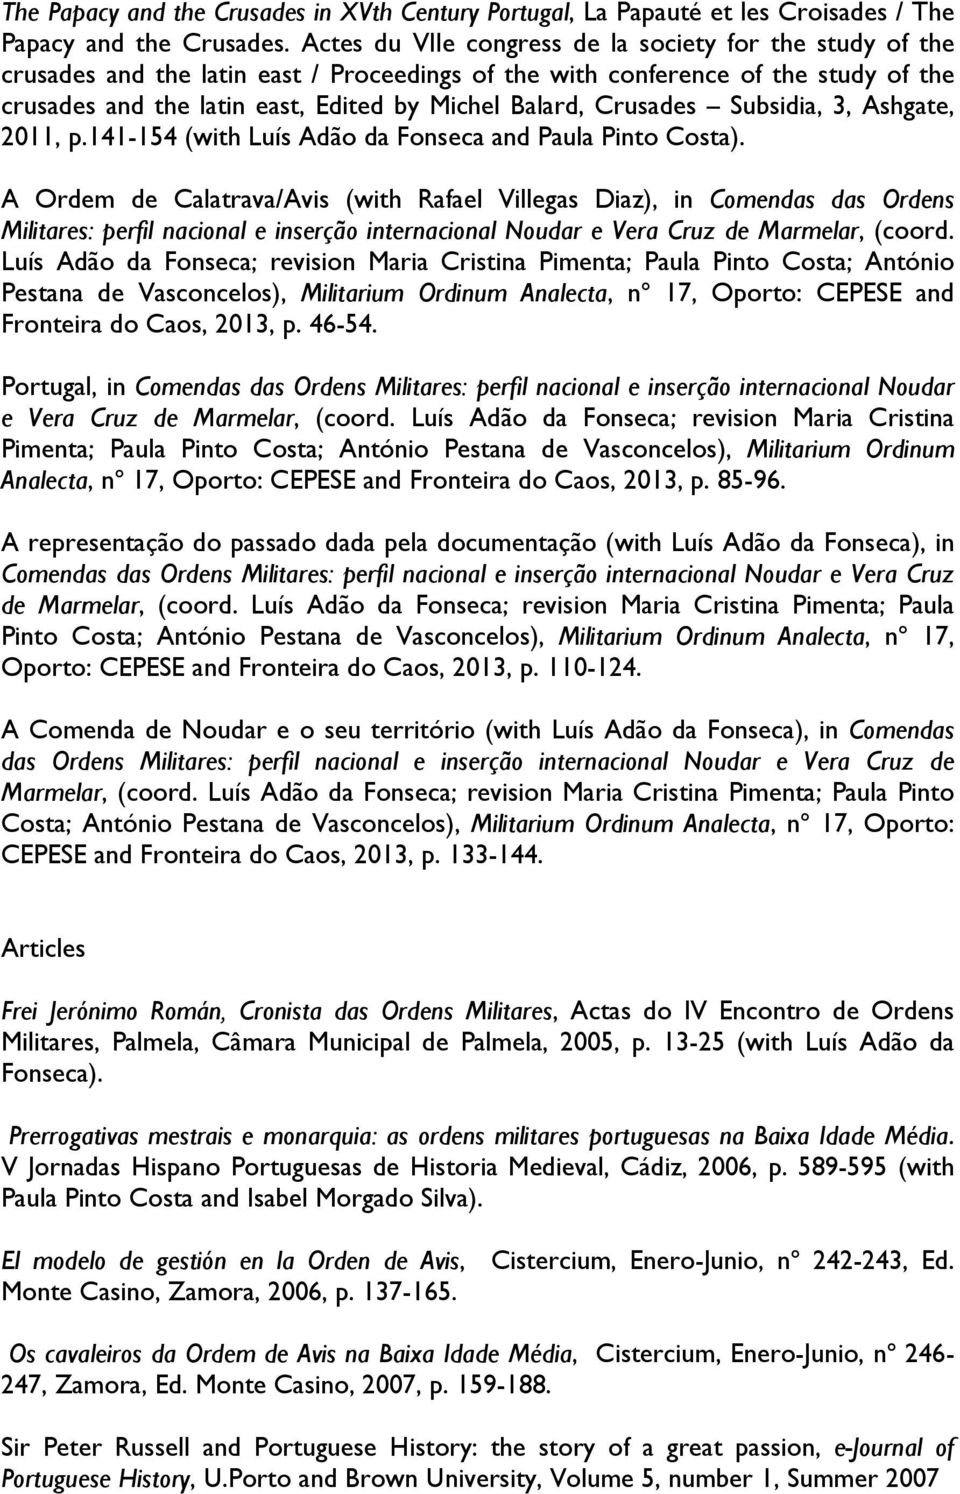 Crusades Subsidia, 3, Ashgate, 2011, p.141-154 (with Luís Adão da Fonseca and Paula Pinto Costa).